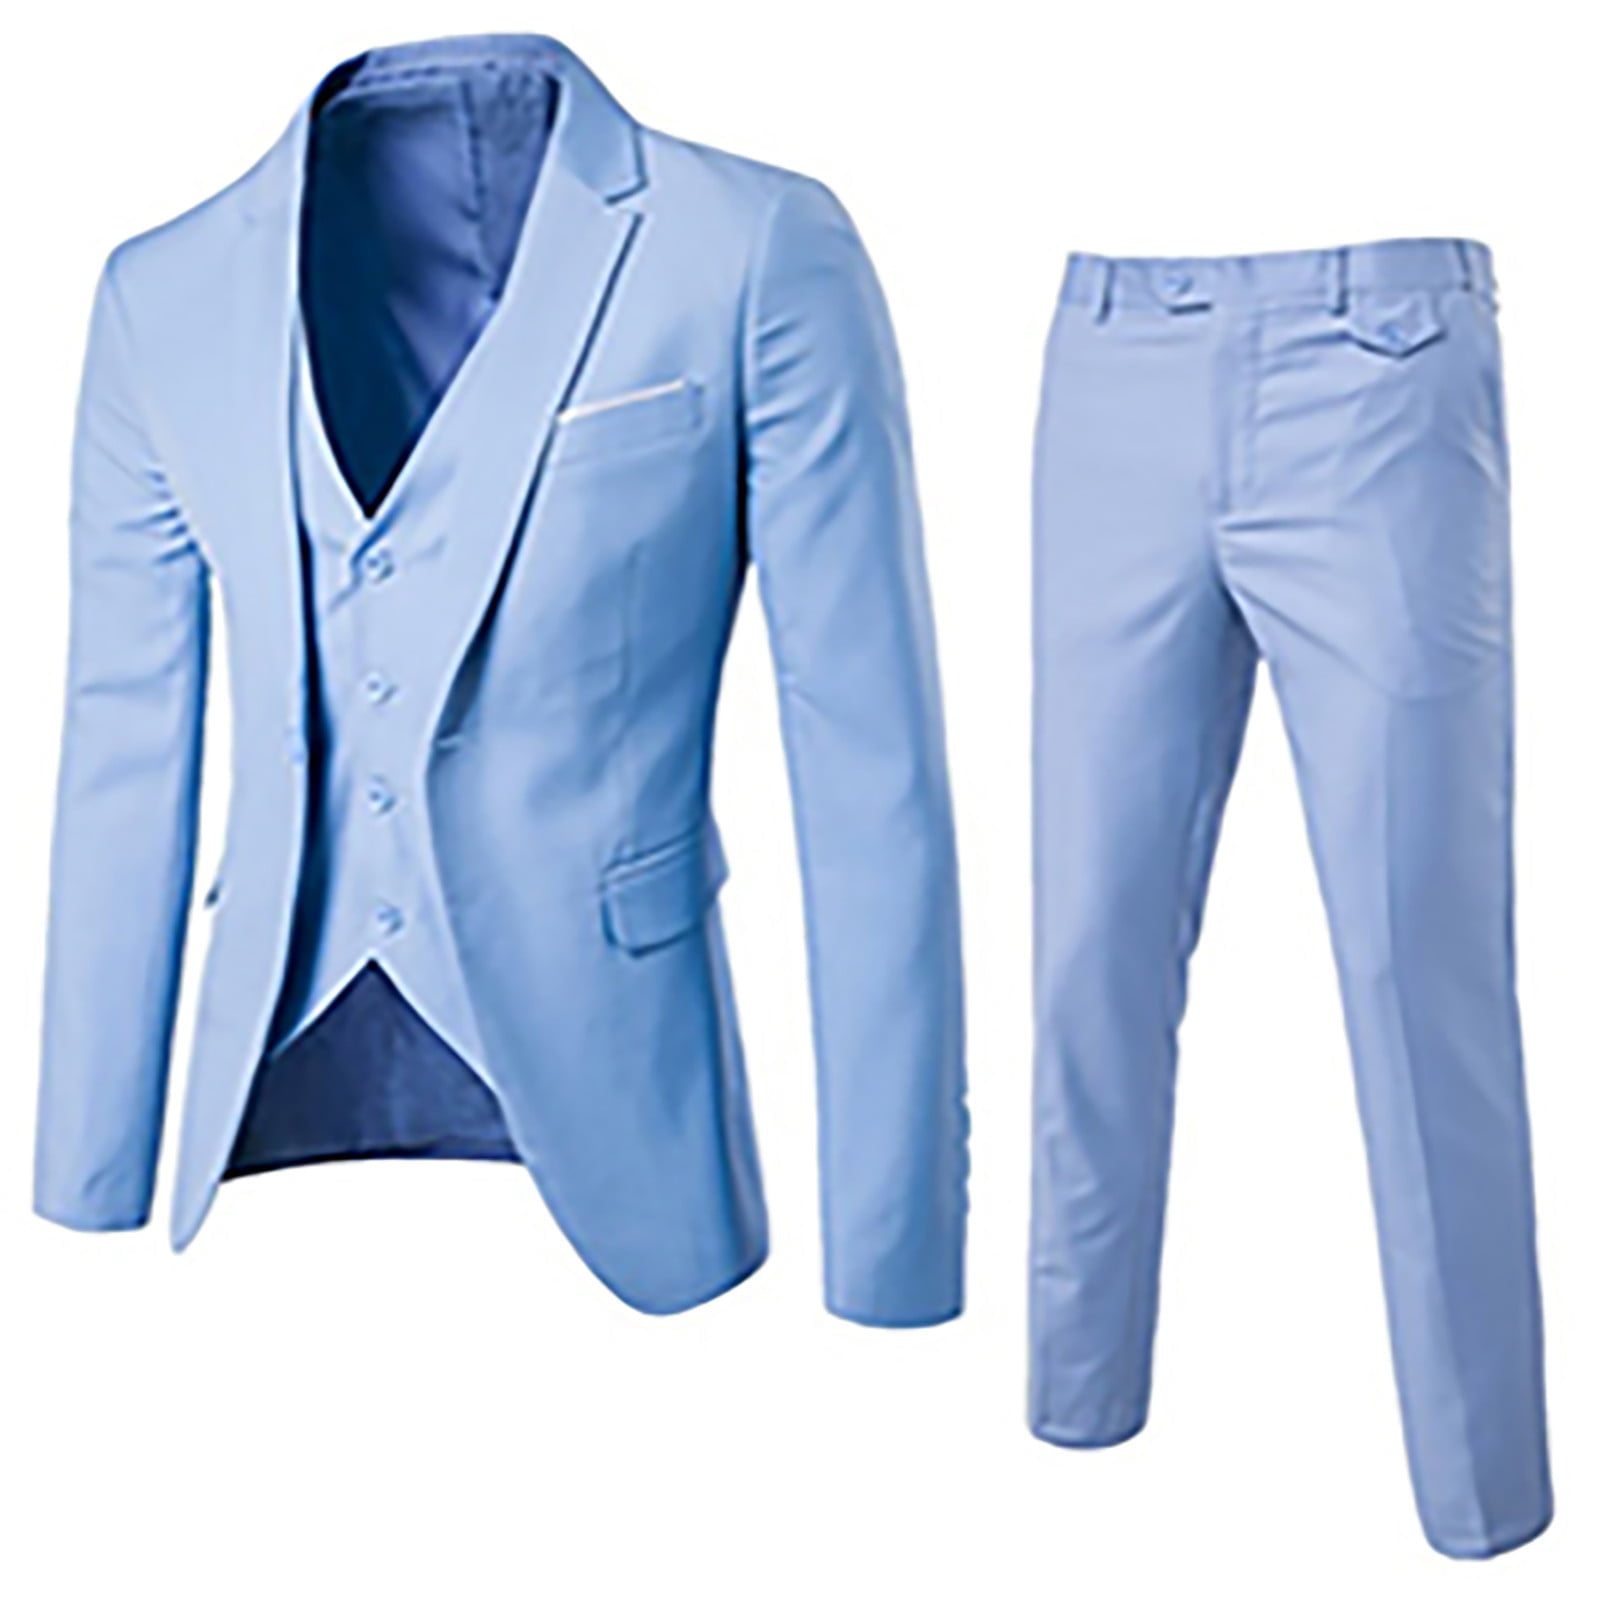 qucoqpe Men's Slim Fit Suit One Button 3-Piece Blazer Dress Business  Wedding Party Jacket Vest & Pant on Clearance 